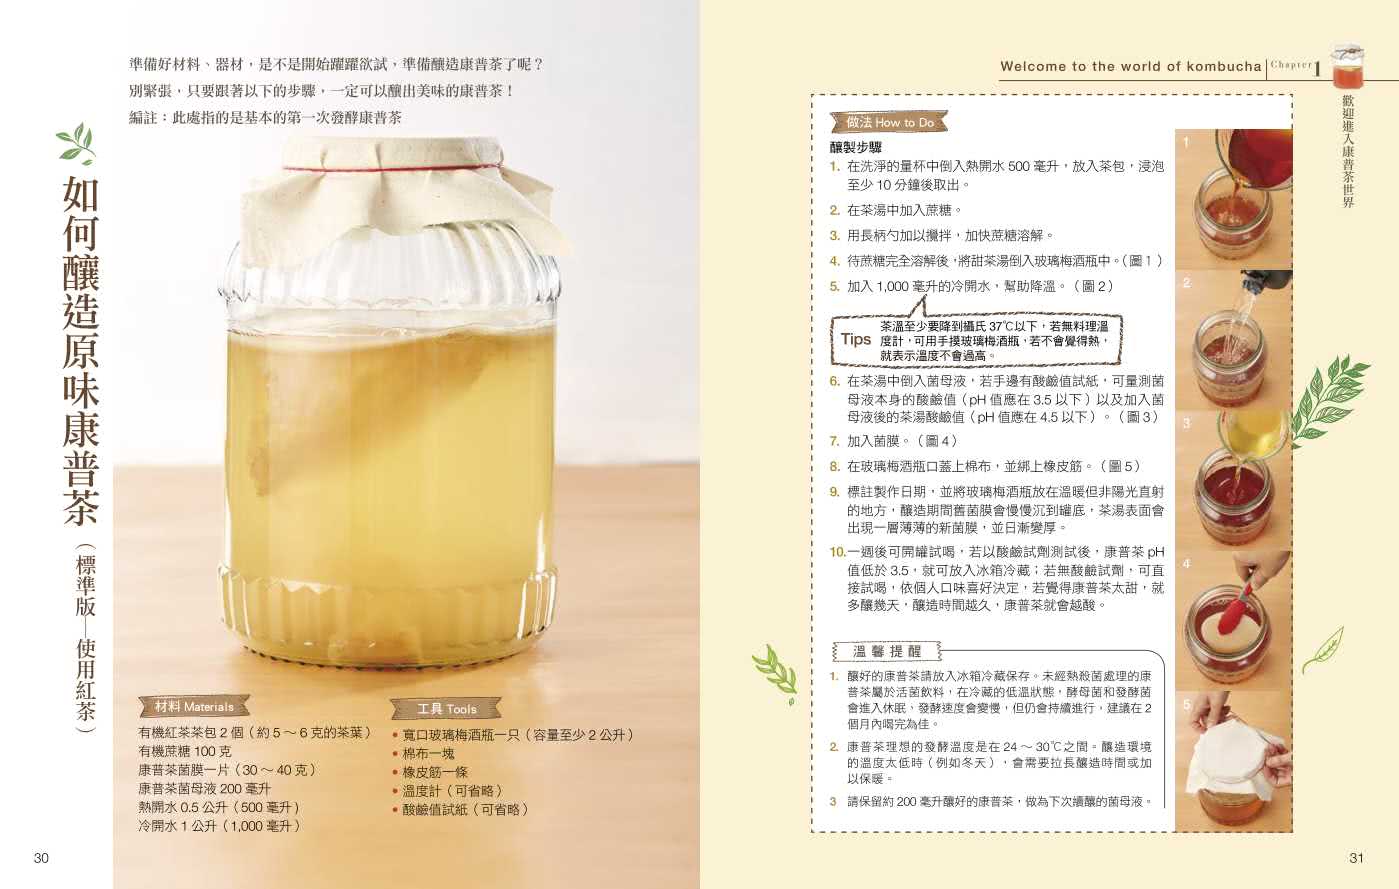 愛上康普茶:醫學博士 step by step 親授 從釀製到應用 打造健康好腸道